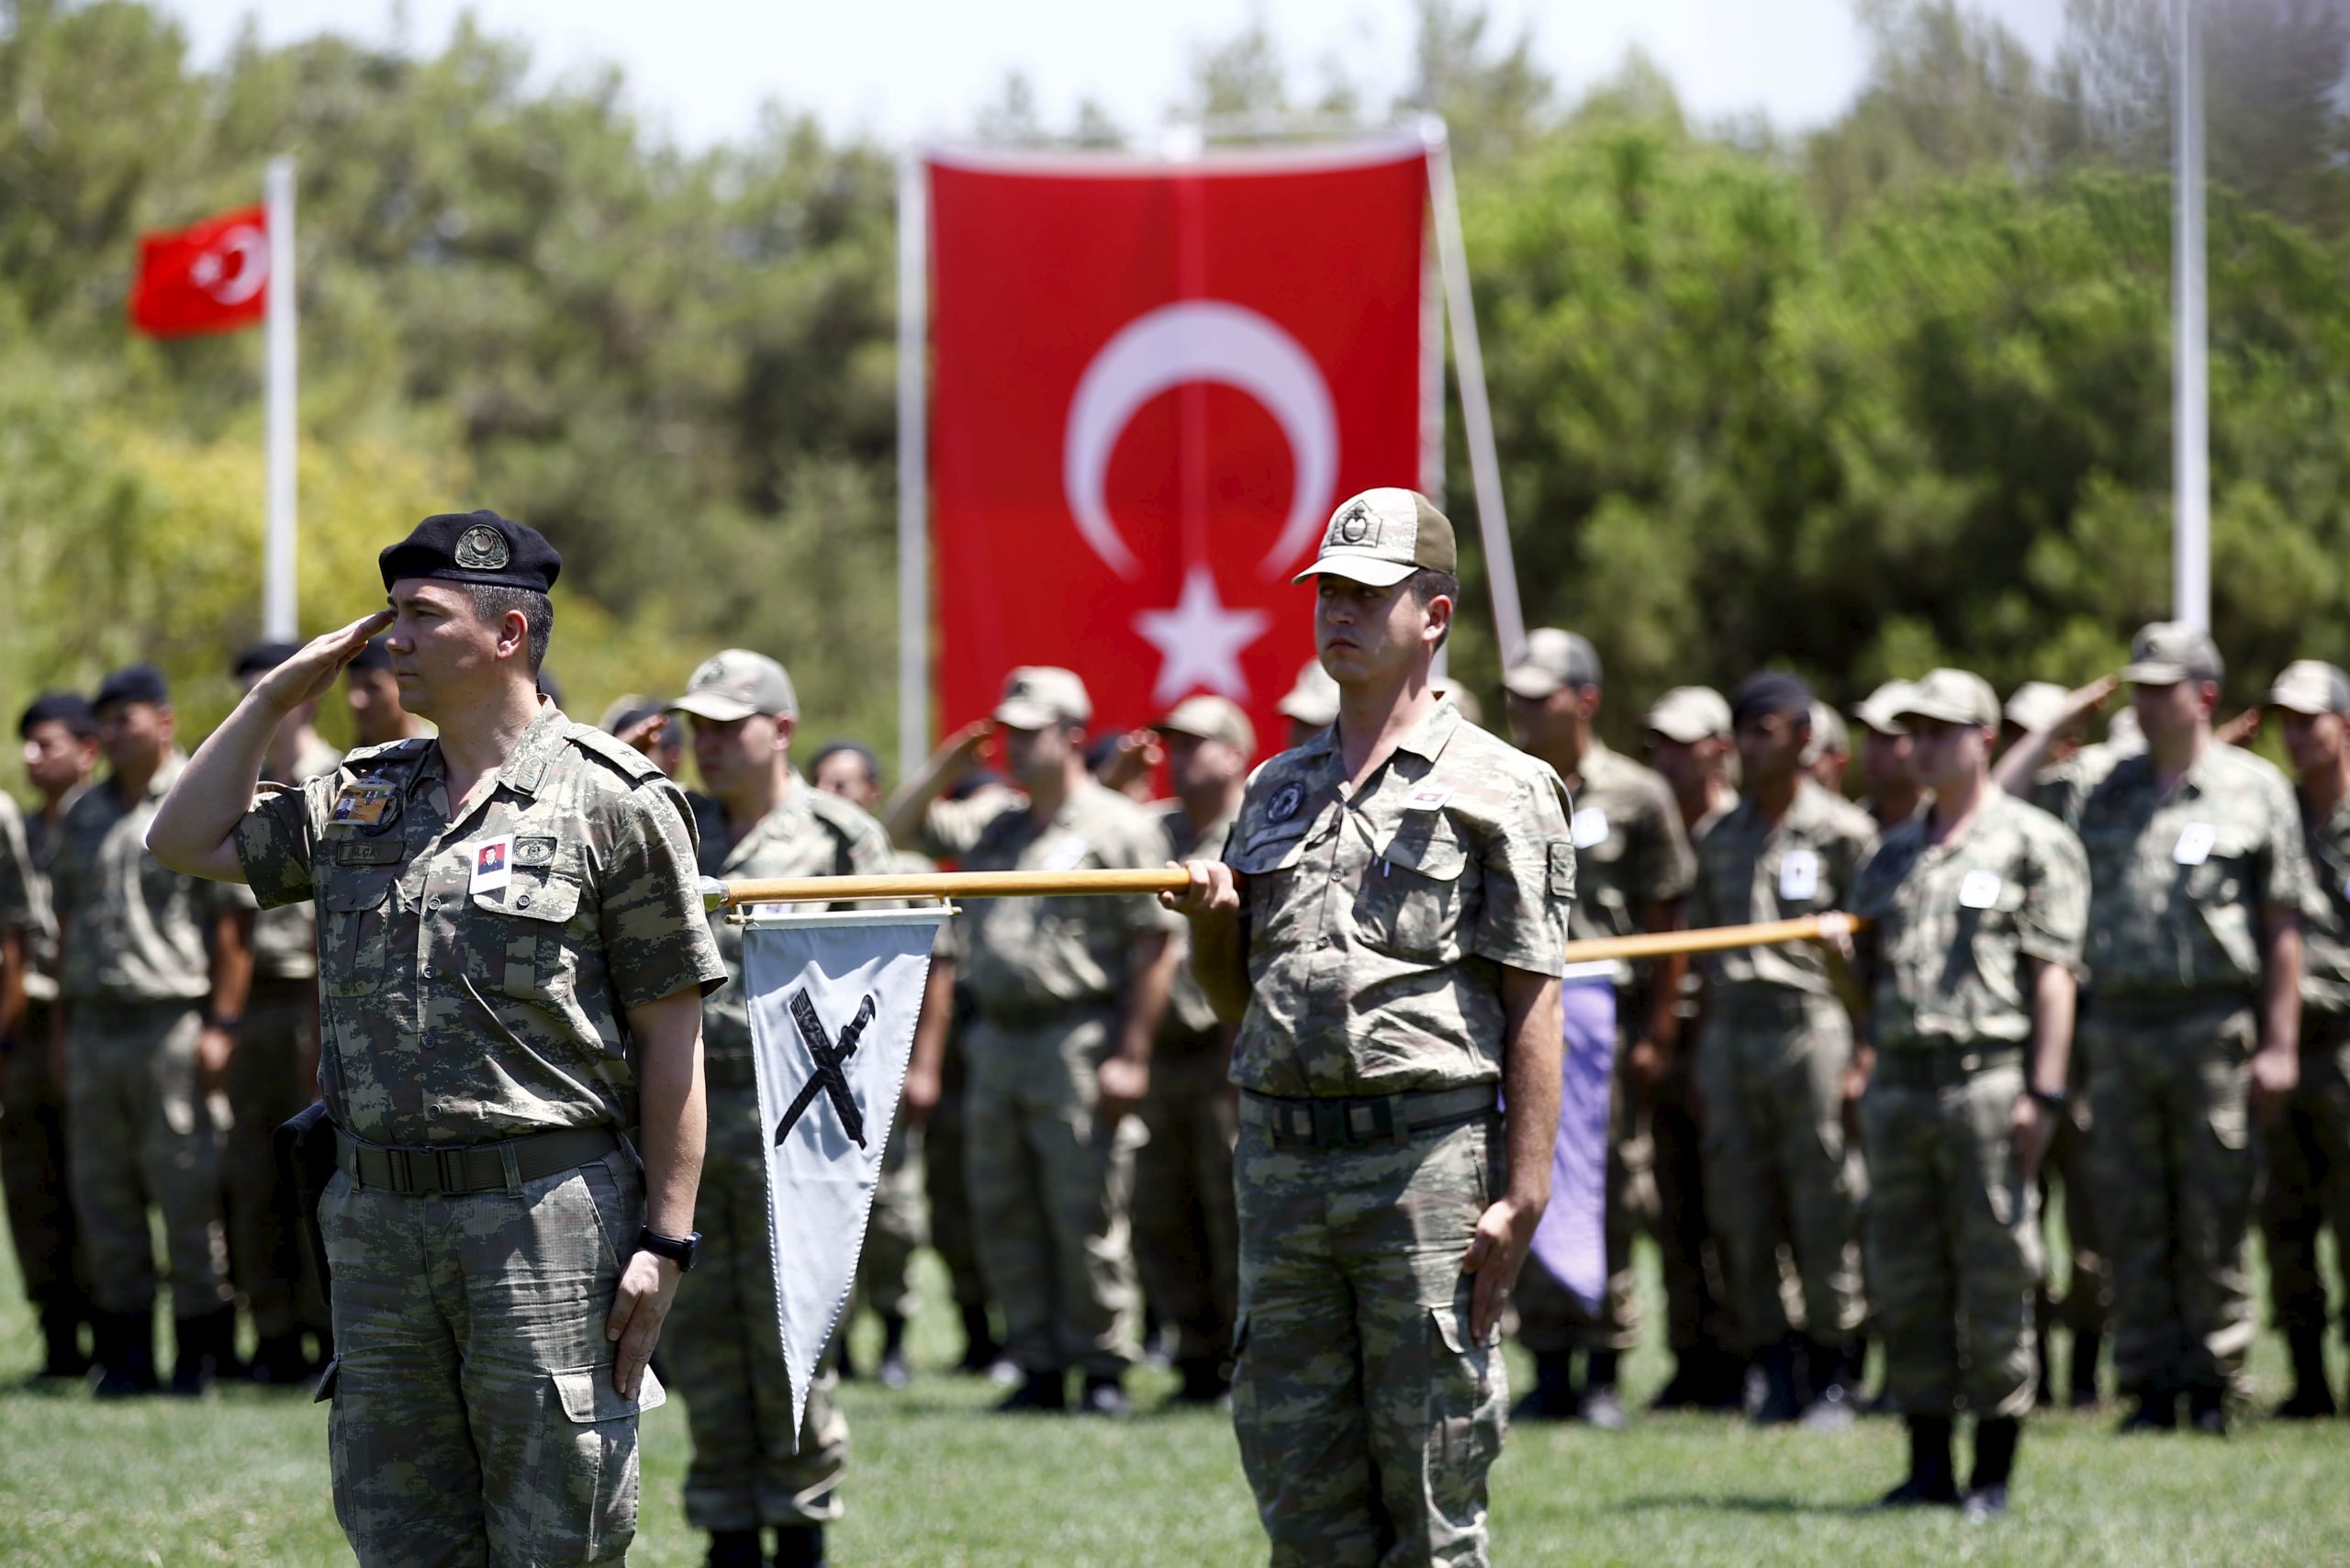 Τουρκία: Ξεκινάει η αποστολή Τούρκων στρατιωτών στο Κατάρ, σε ενίσχυση της υπάρχουσας βάσης